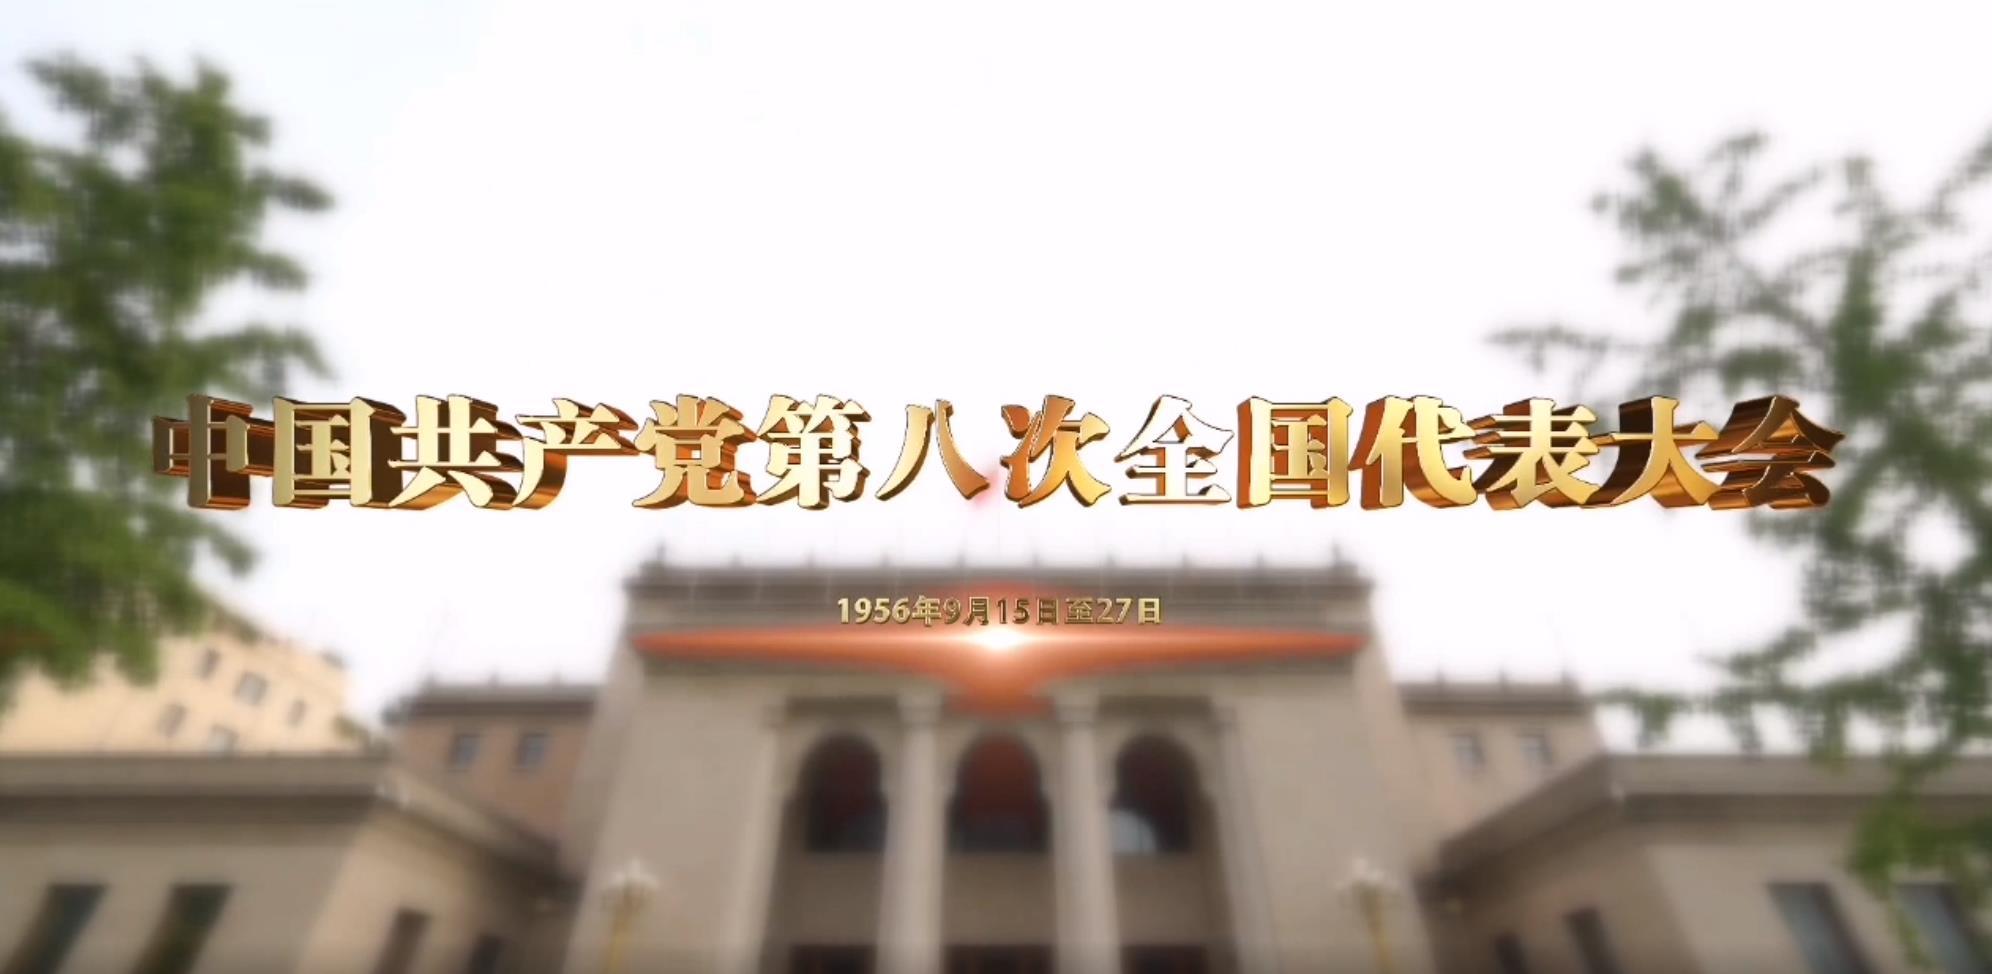 《党史上的重要会议》:中国共产党第八次全国代表大会